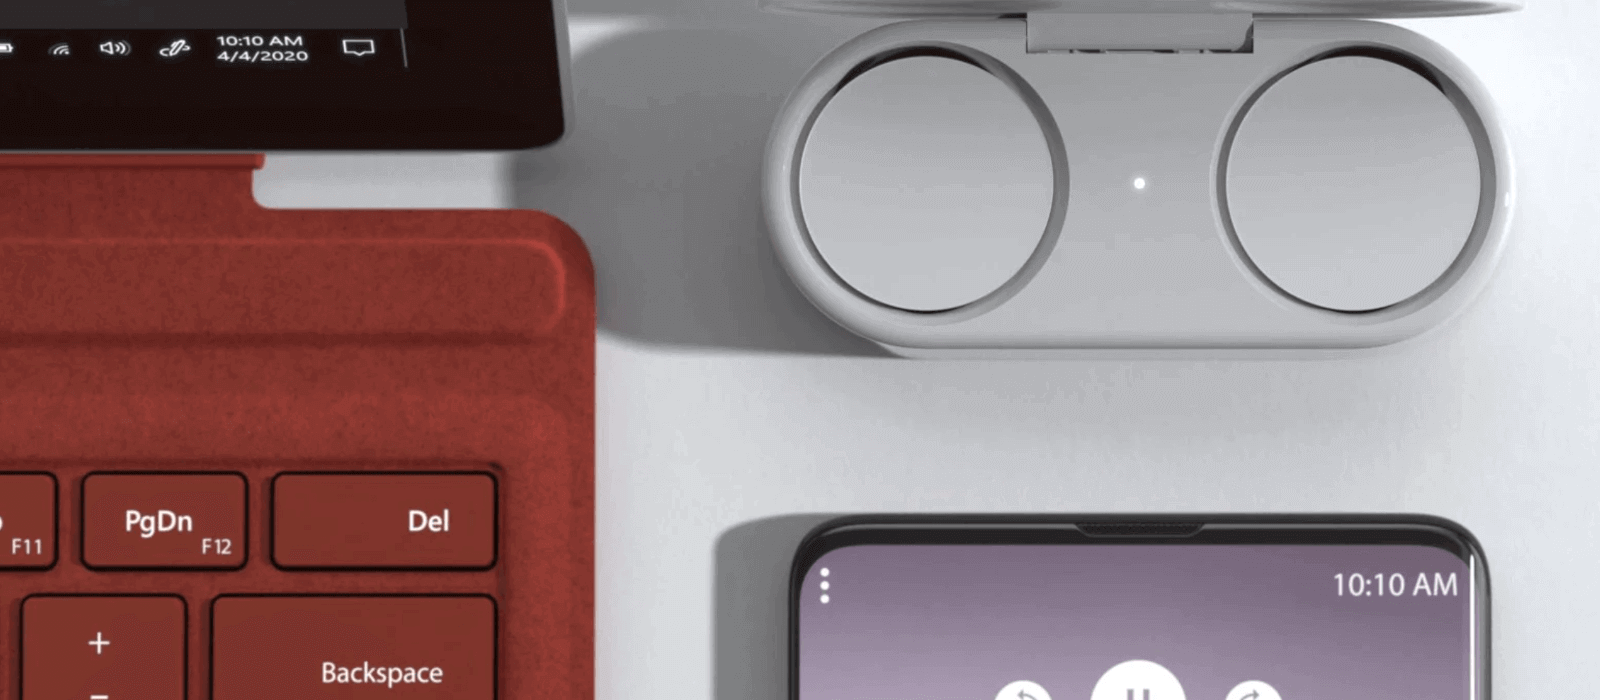 La coque de chargement avec les Surface Earbuds inclus est posée à côté de la Surface Pro 7 avec le Type Cover rouge coquelicot ainsi qu’un Smartphone